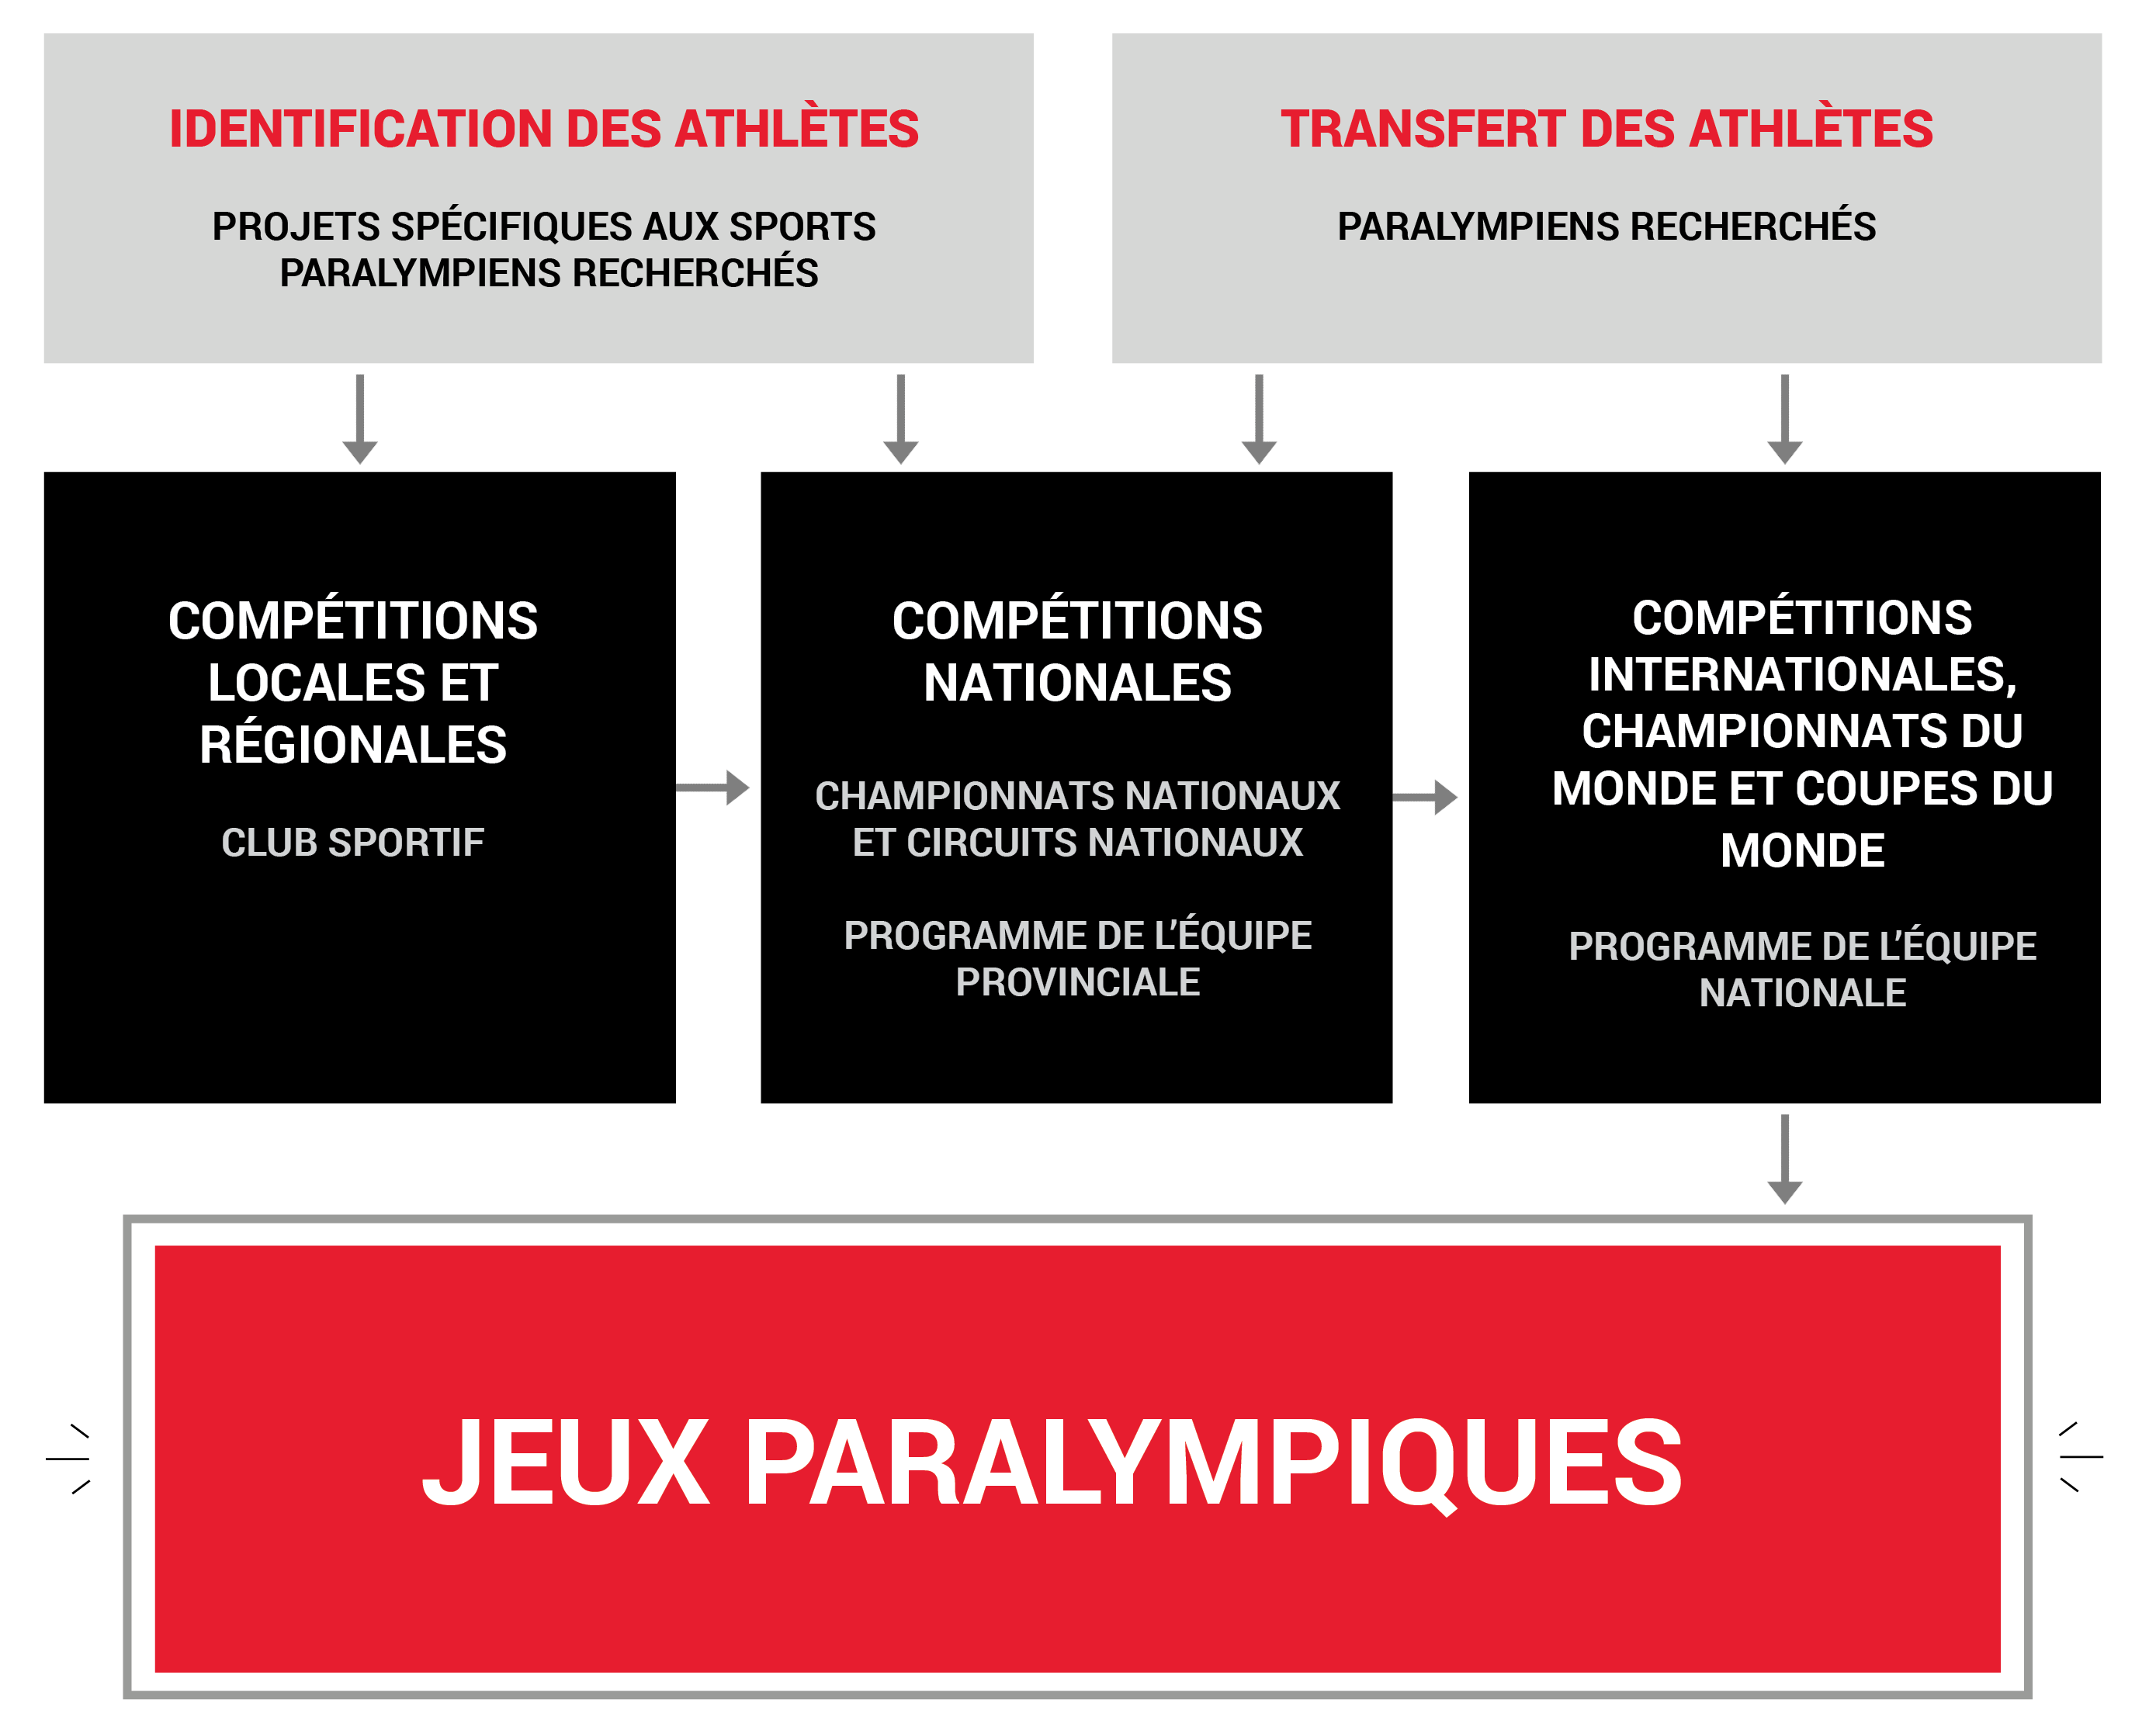 Identification des athlètes, transfer des athlètes --> compétitions locales, nationals, internationales --> jeux Paralympiques